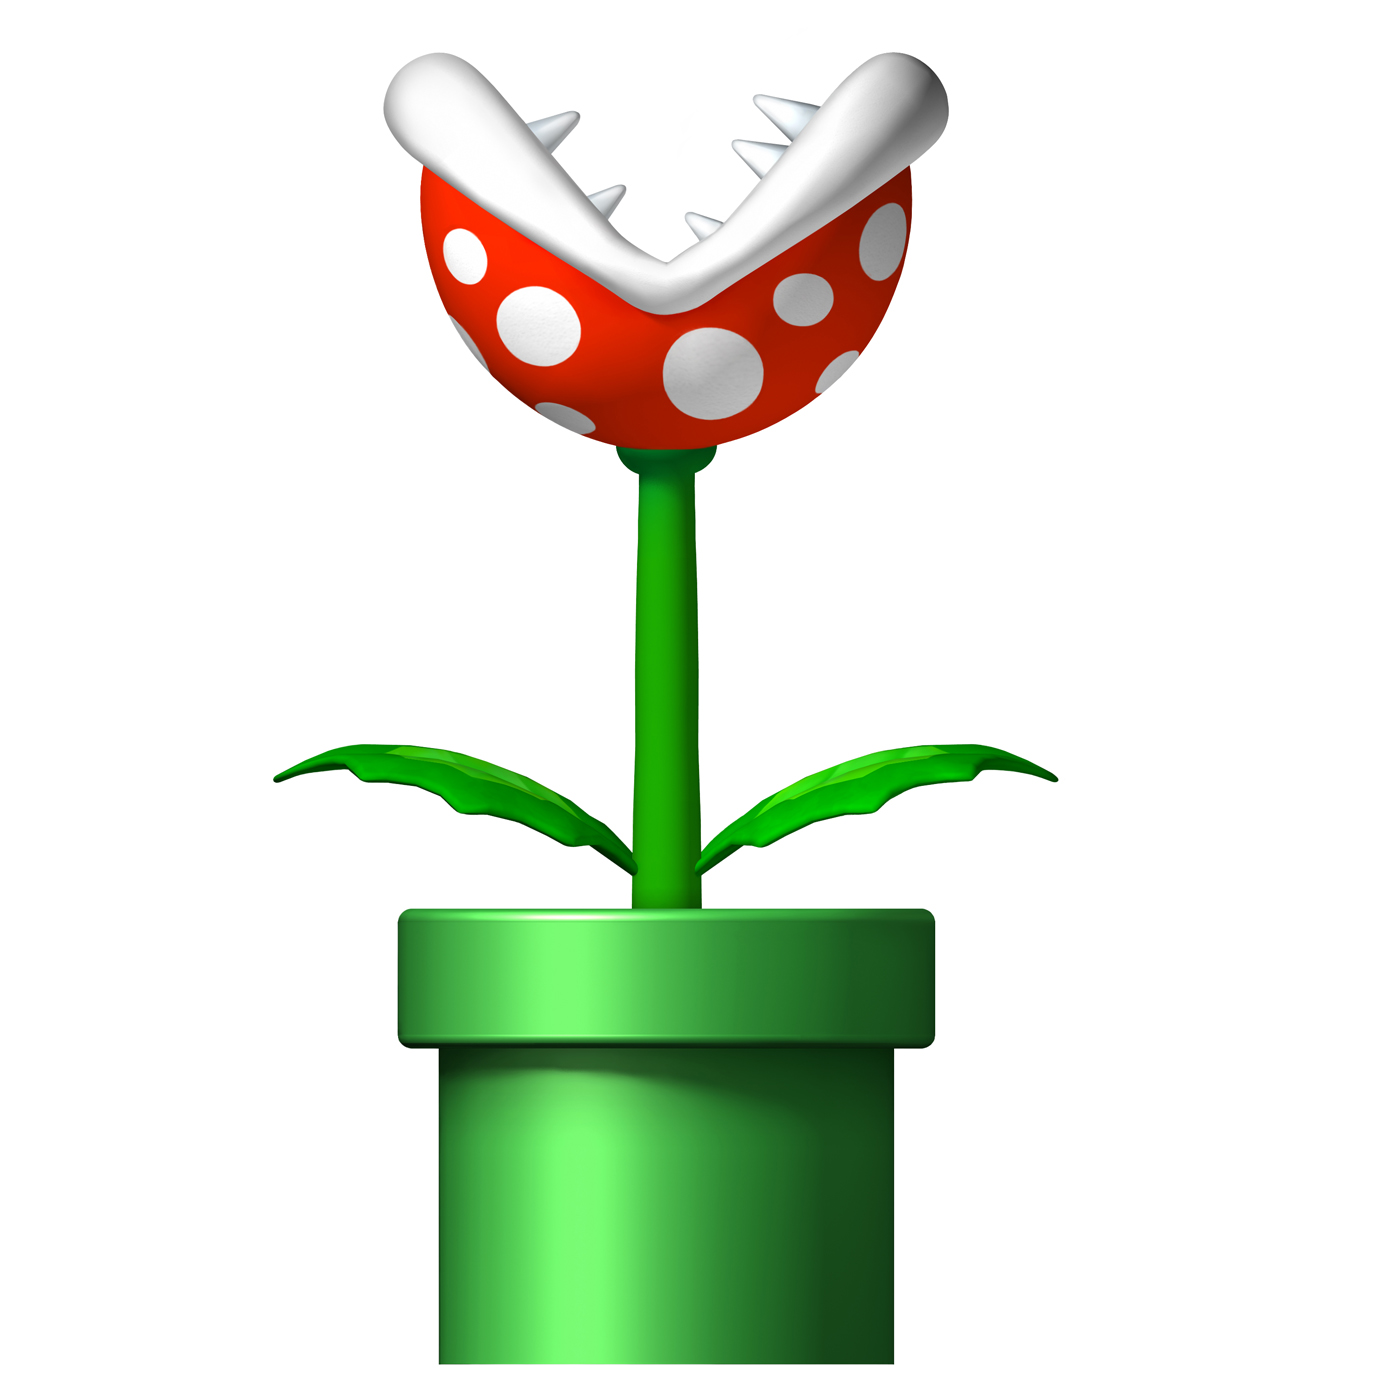 Piranha Plant. Super Mario Bros. 2